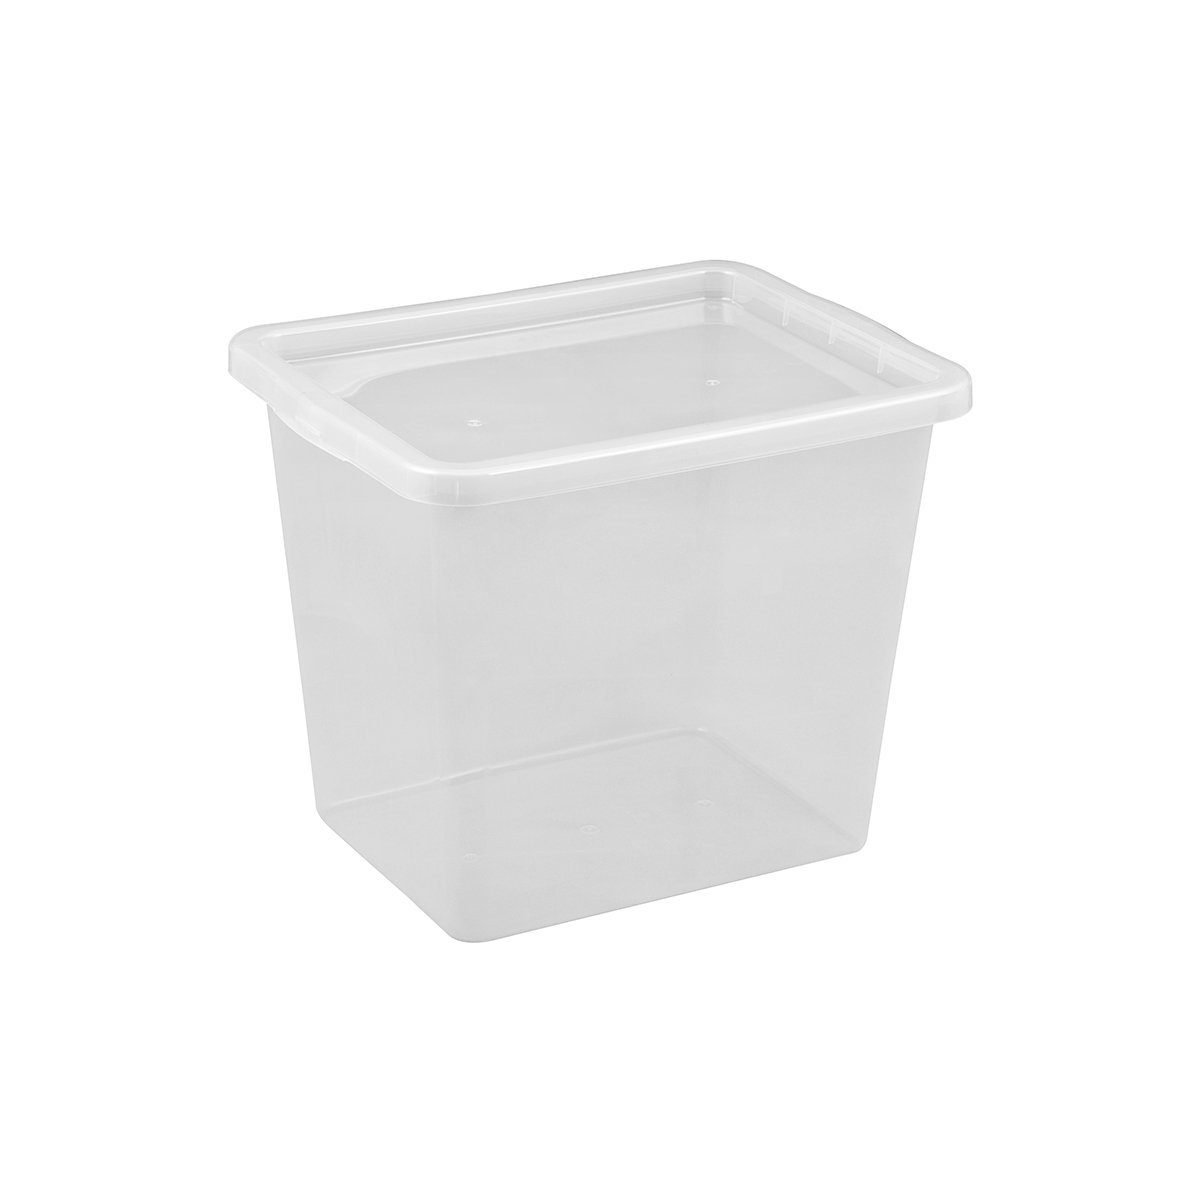 Ящик для хранения Plast Team Basic, с крышкой, 29 л (2297) - фото 1